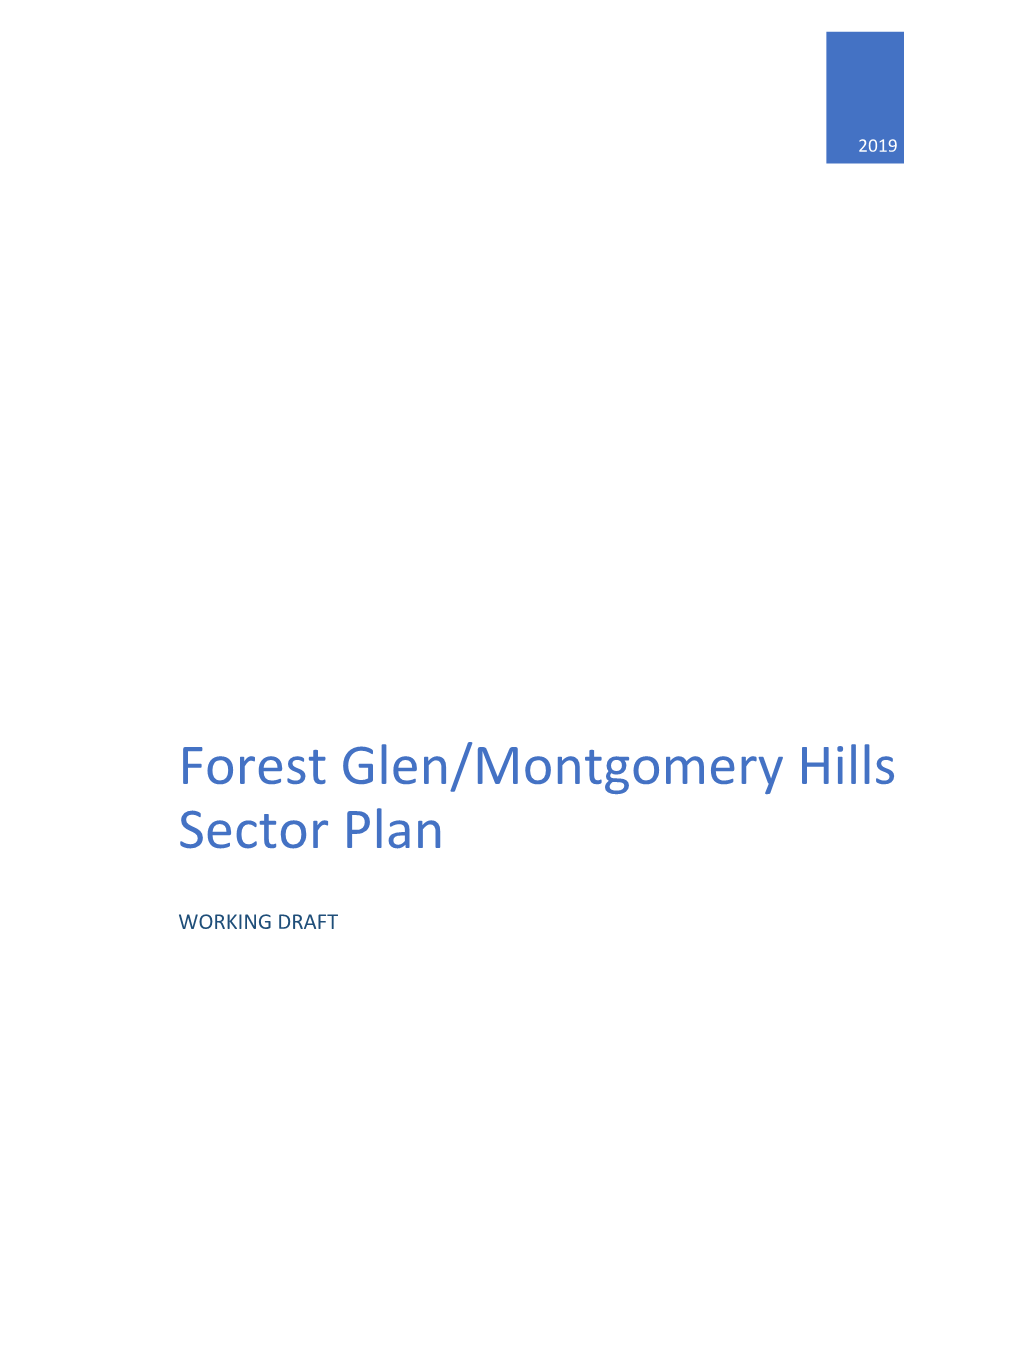 Forest Glen/Montgomery Hills Sector Plan